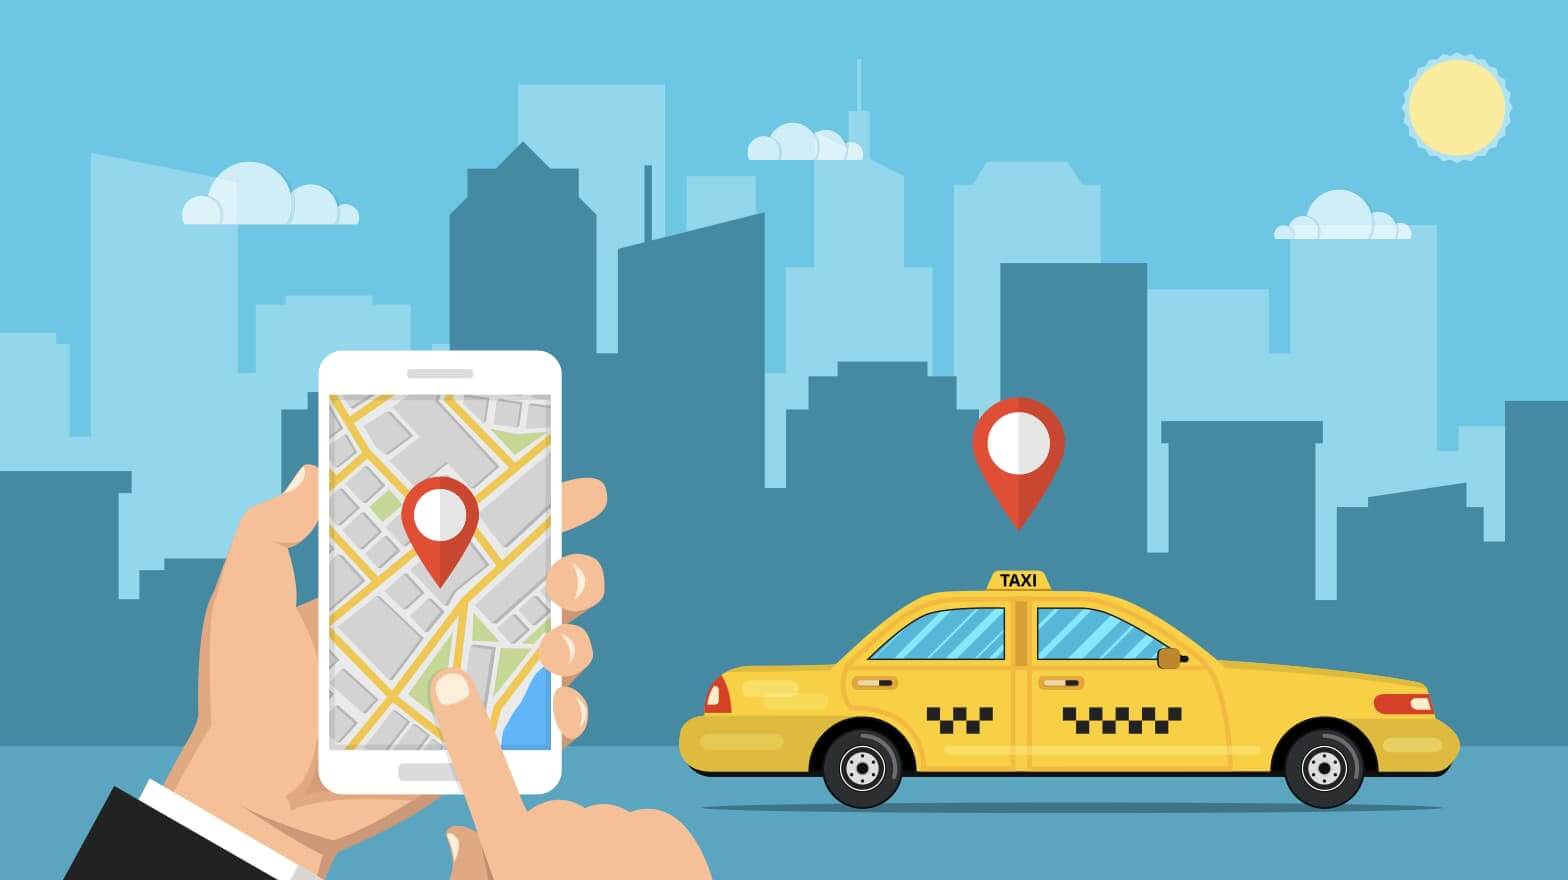 町田で使えるタクシーアプリとクーポン情報